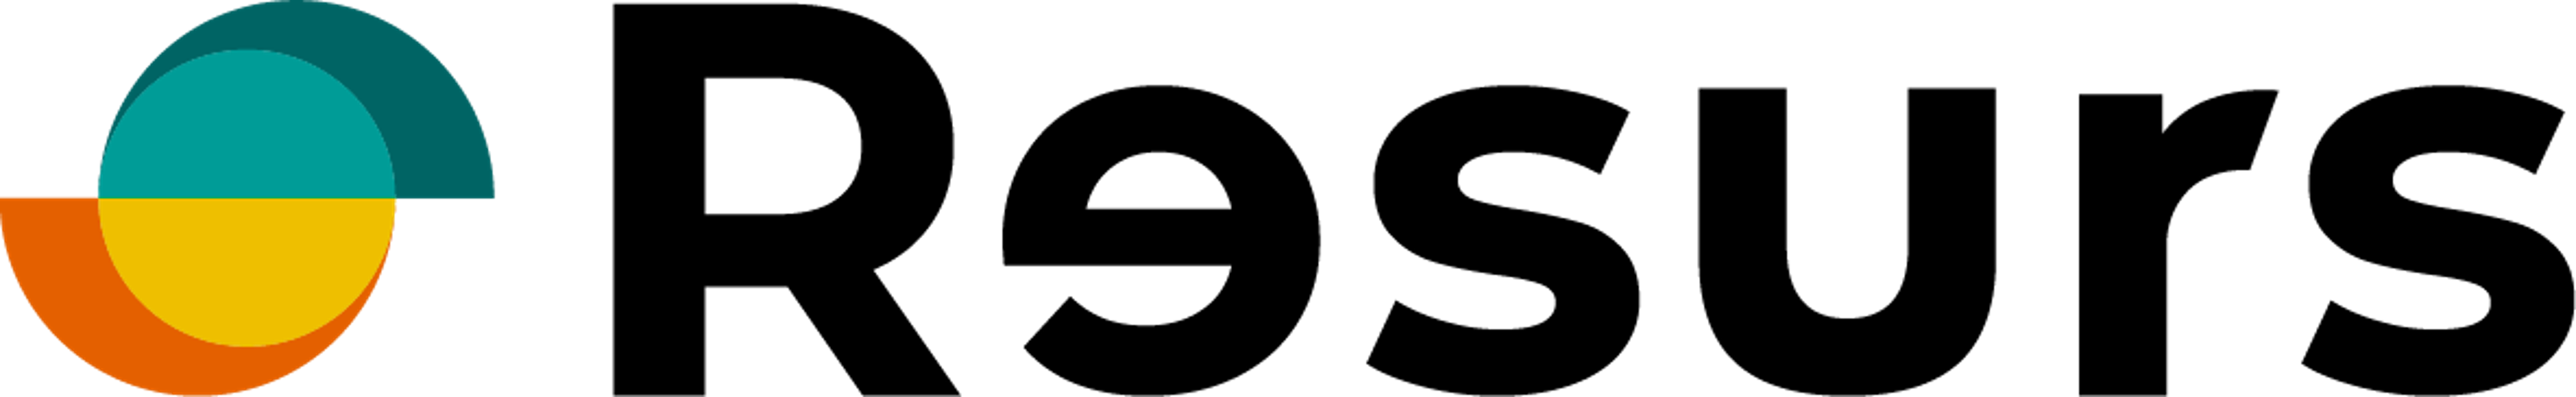 Logo-med-sort.png